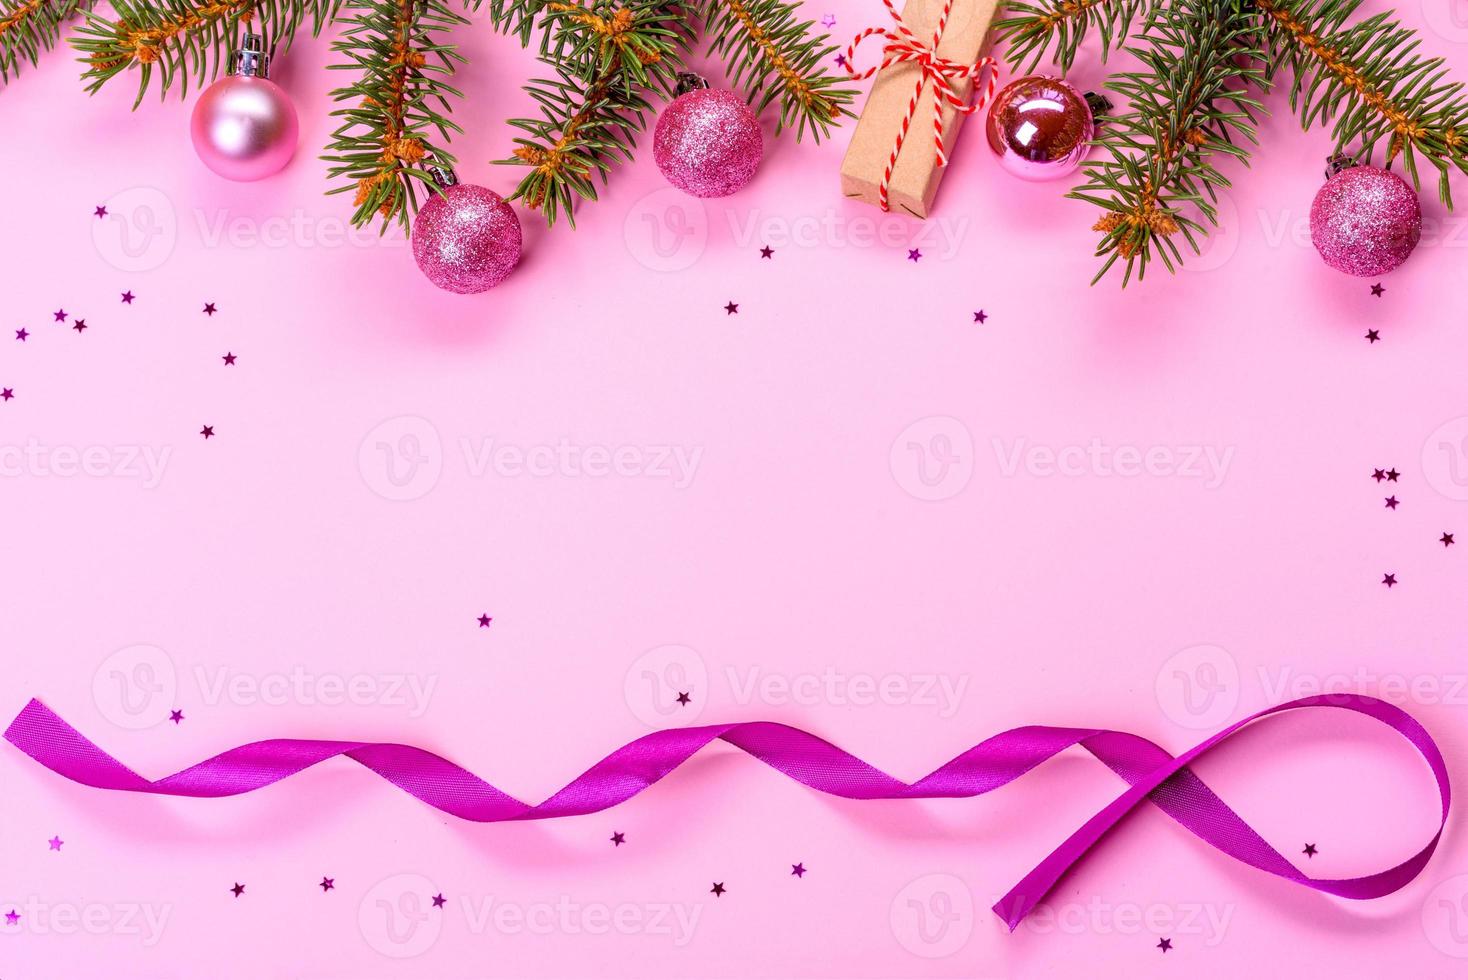 jul ljus färgad dekorativ bakgrund foto